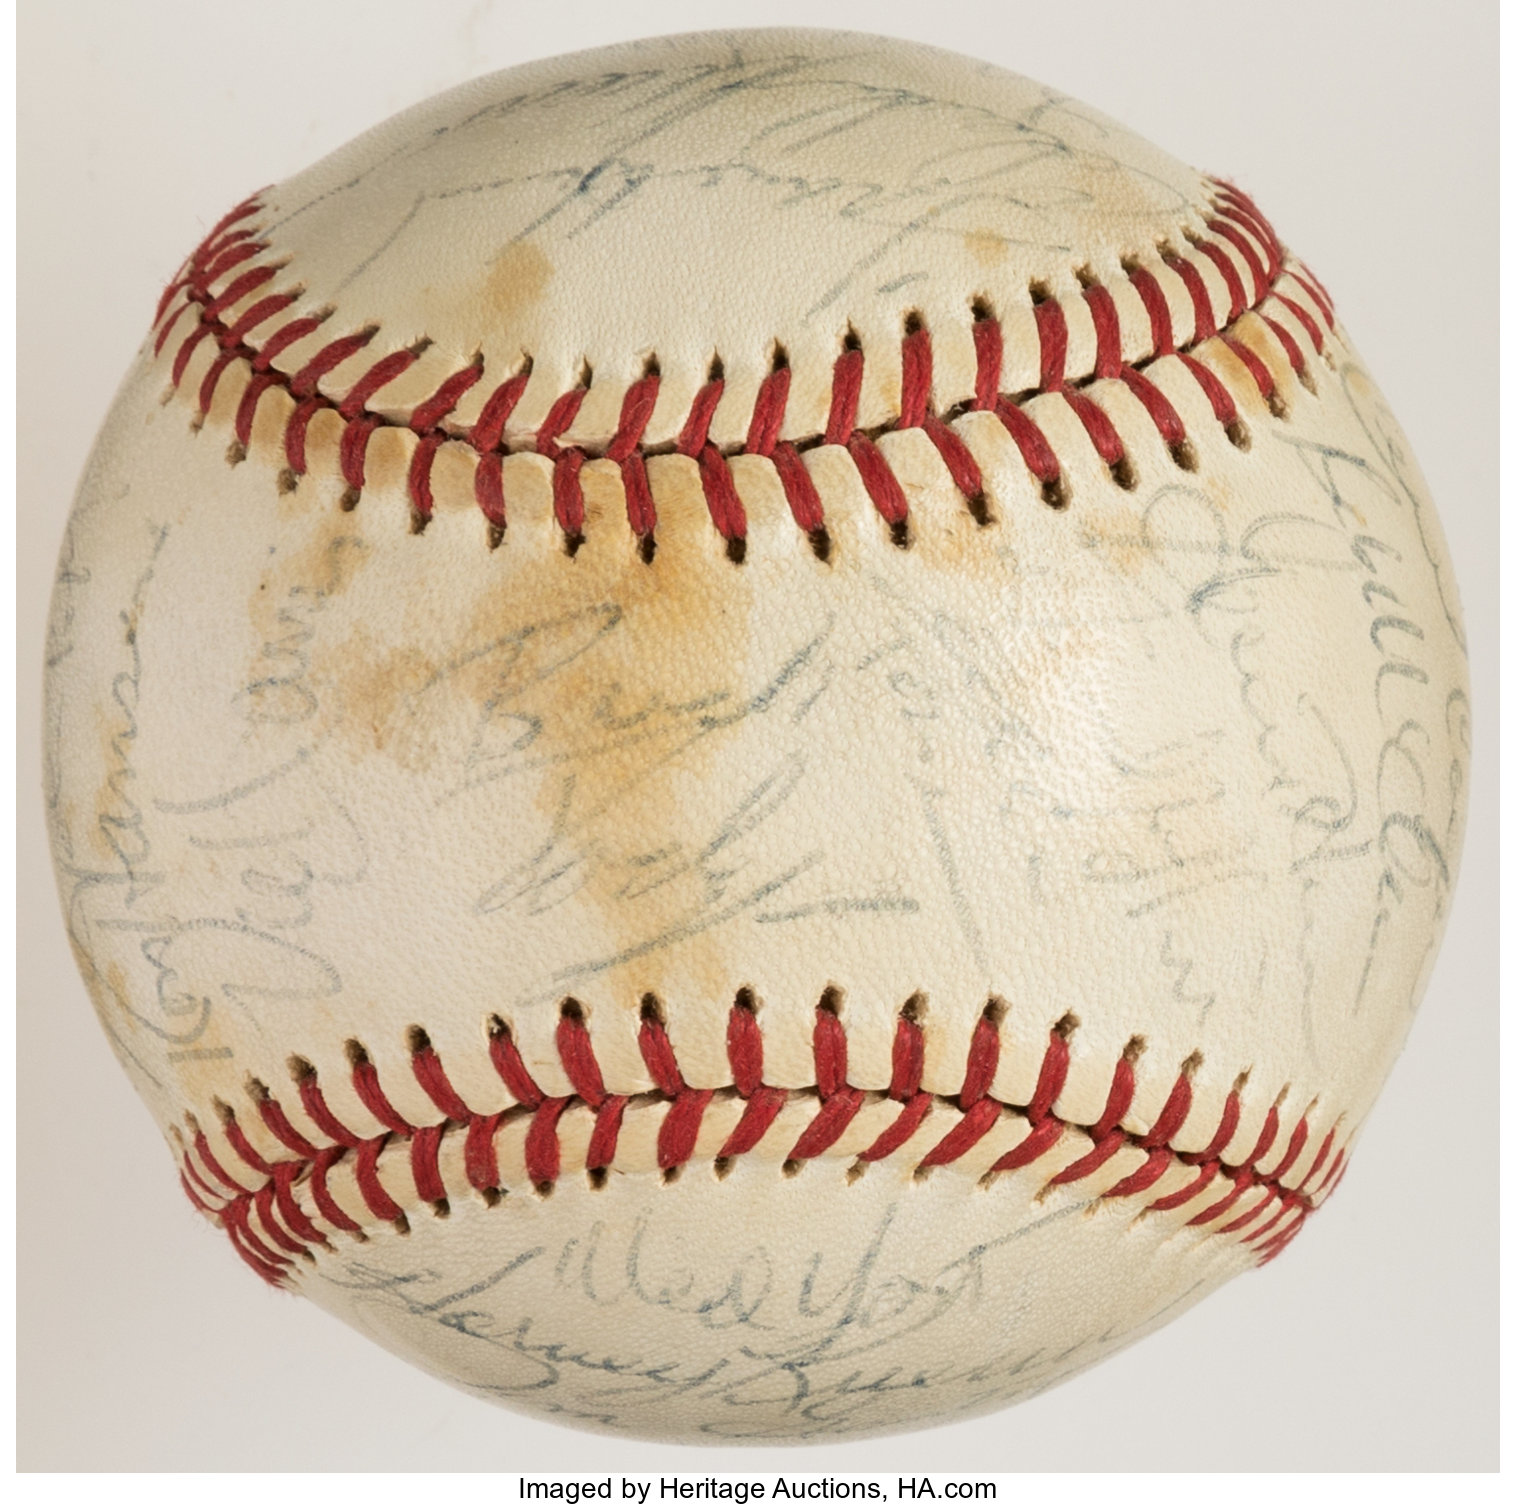 Jim Gantner Autographed Baseball